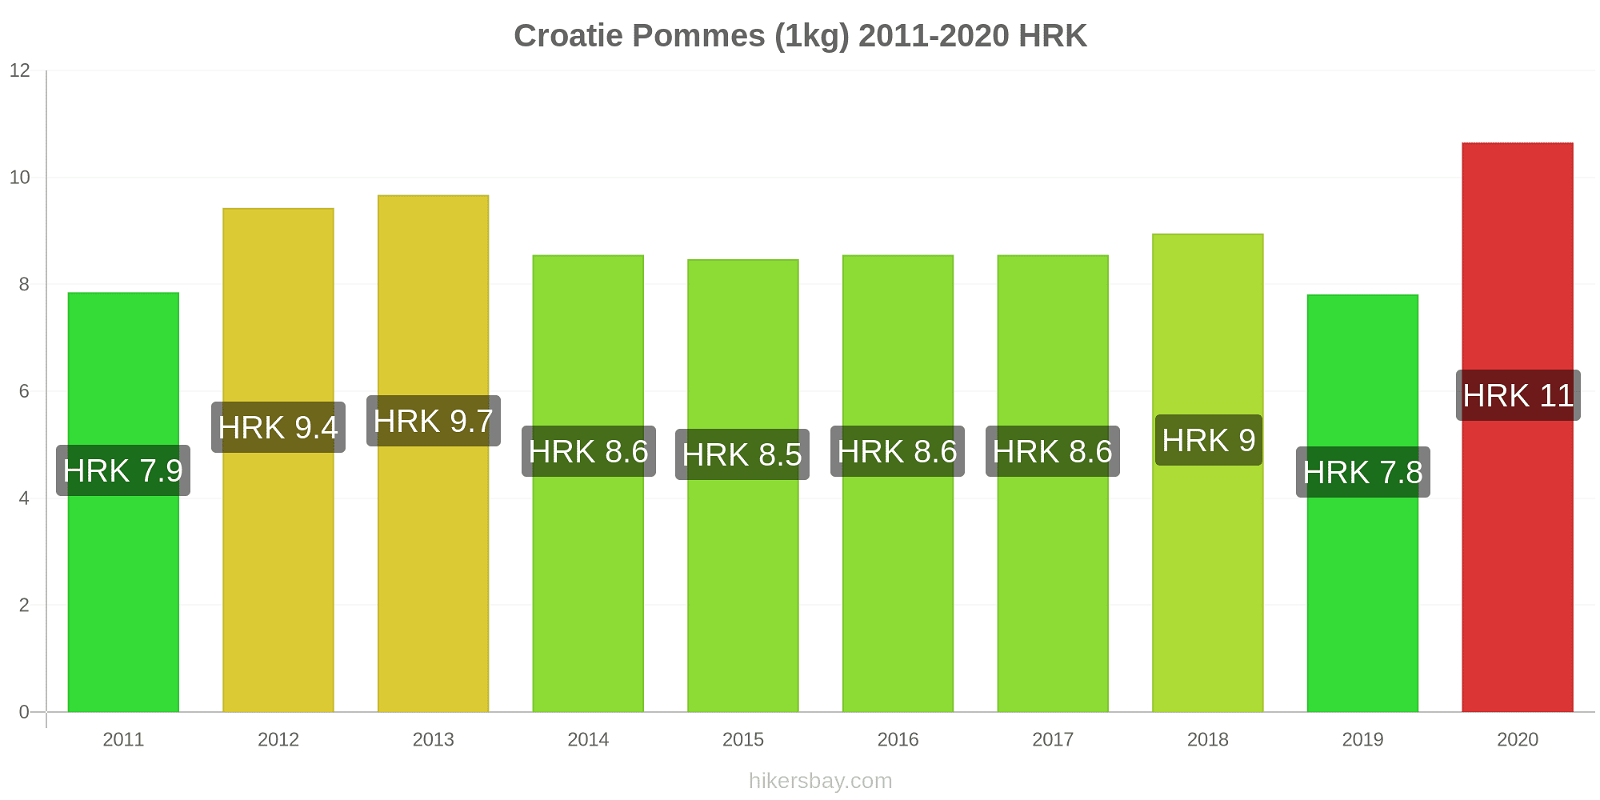 Croatie changements de prix Pommes (1kg) hikersbay.com